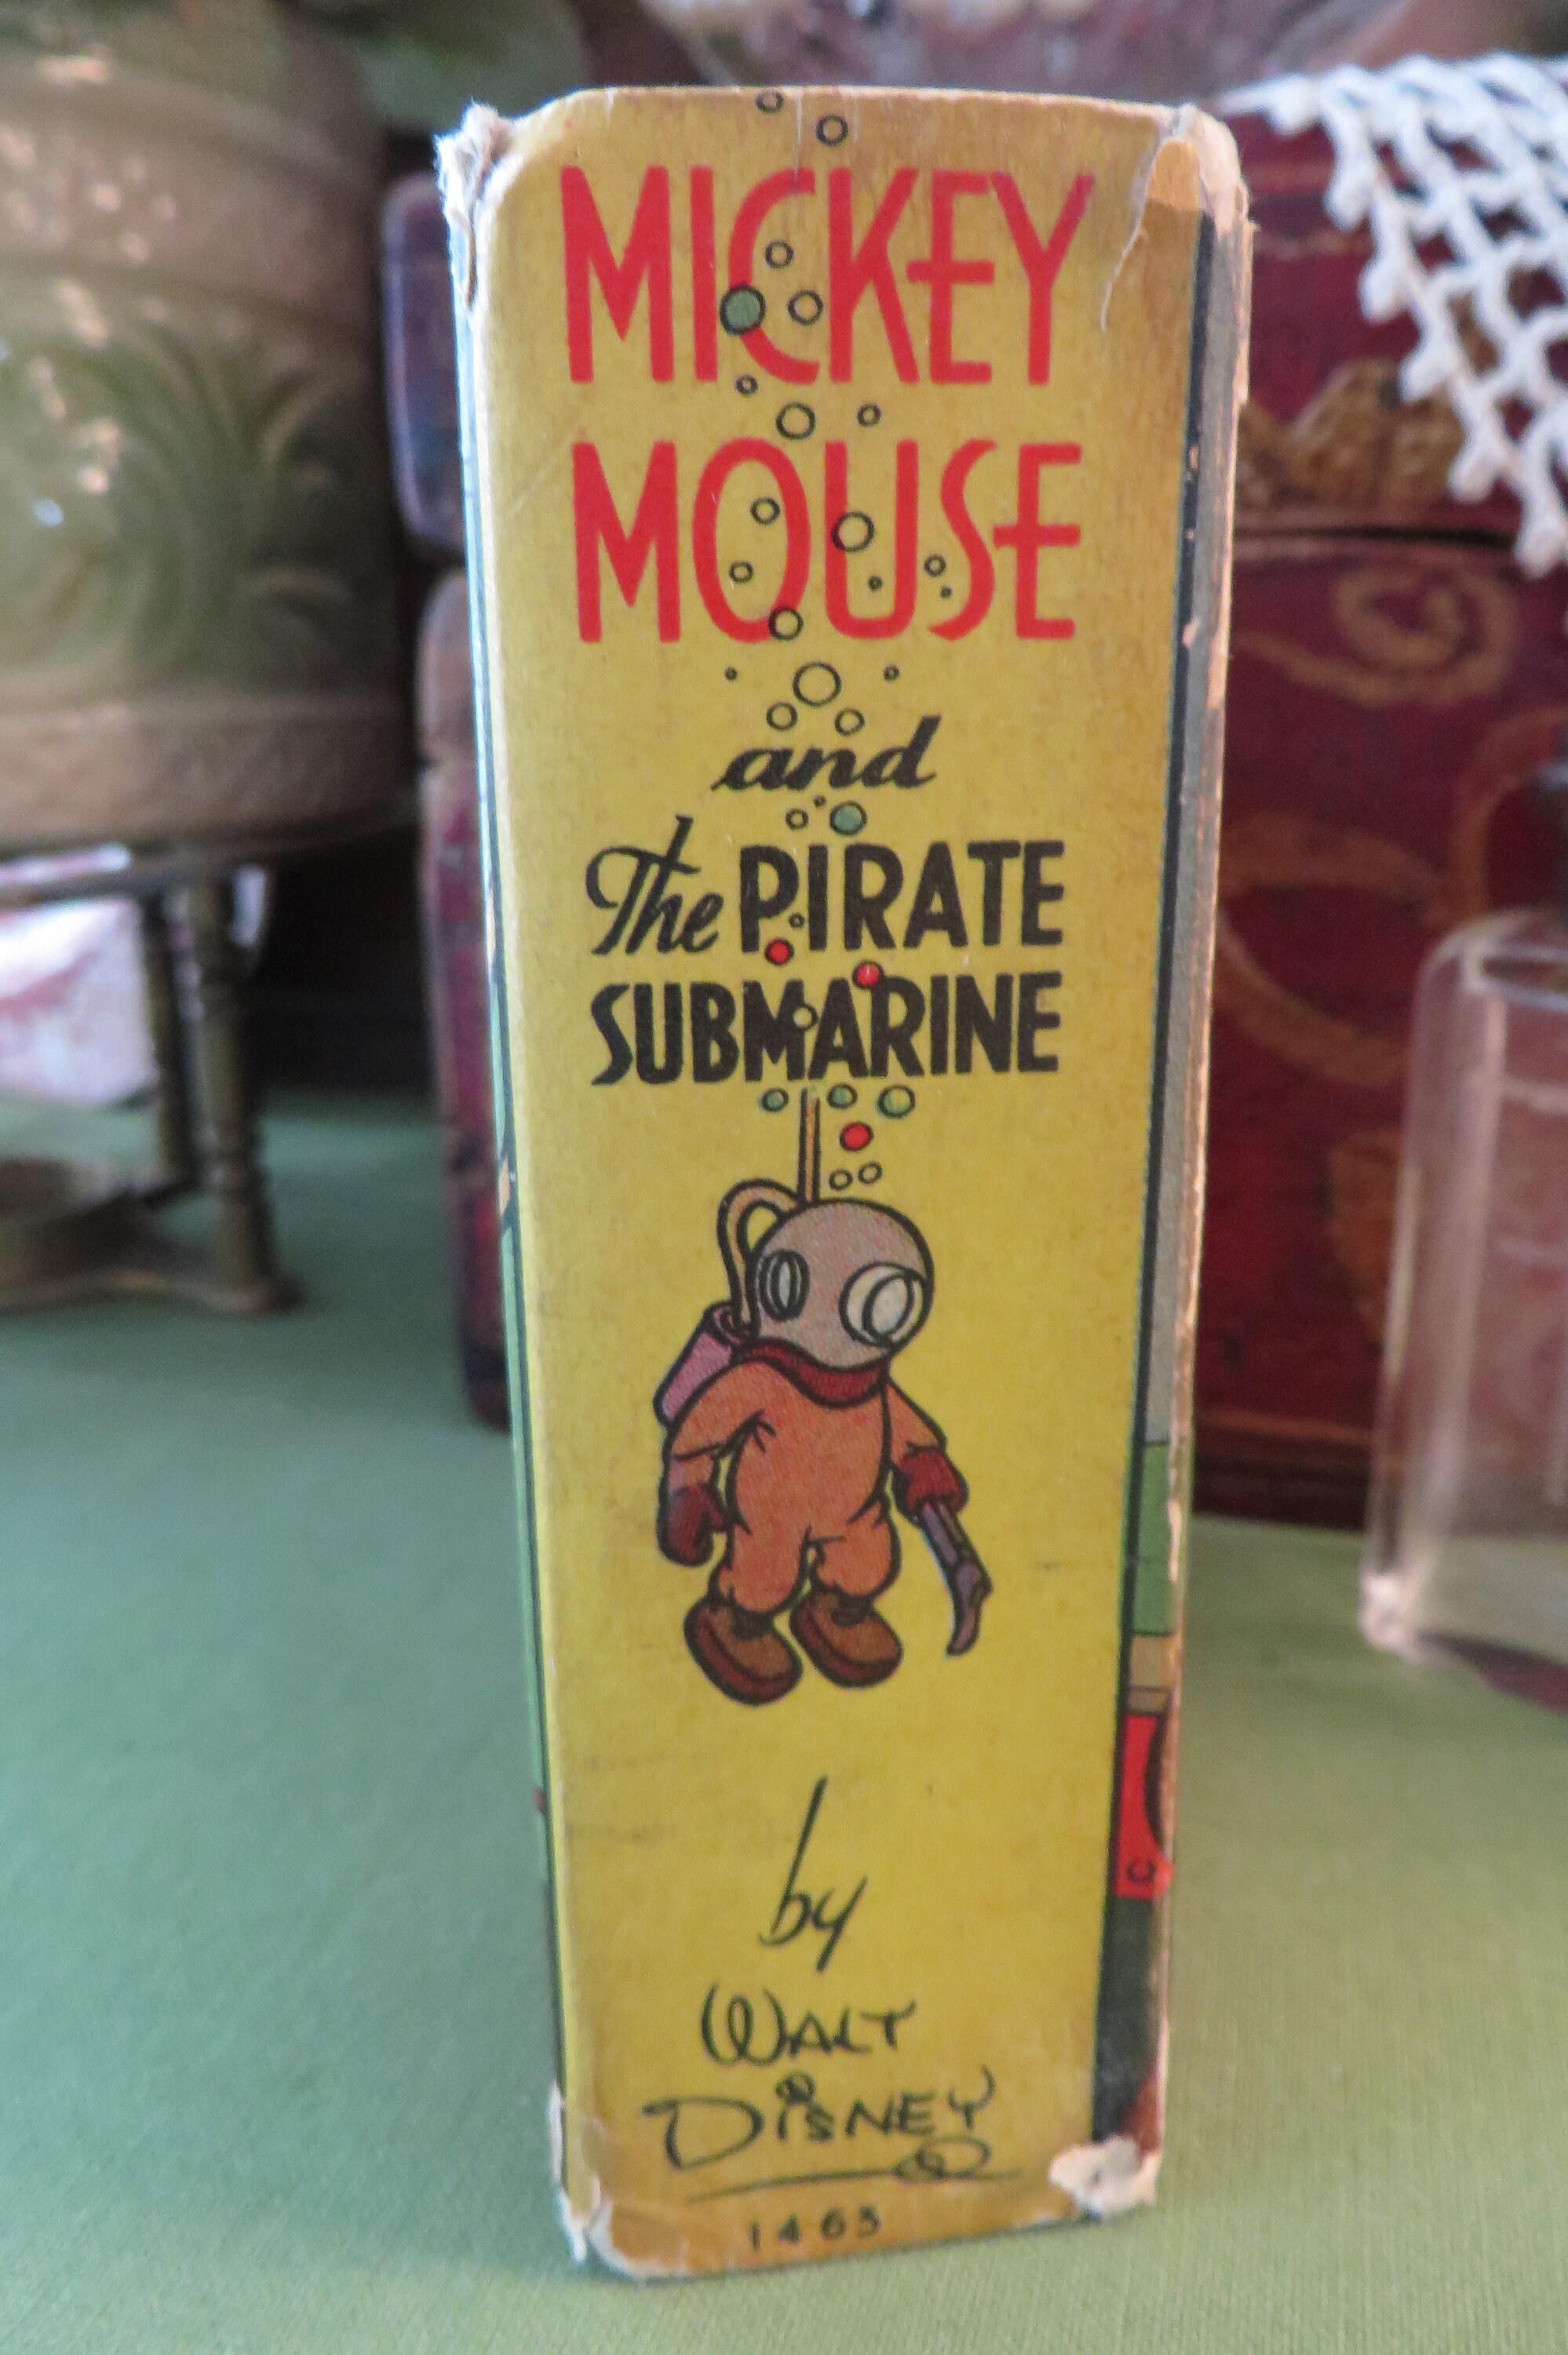 Mascotte Topolino - Mickey Mouse in vendita a Samarate Varese da  Mazzucchellis